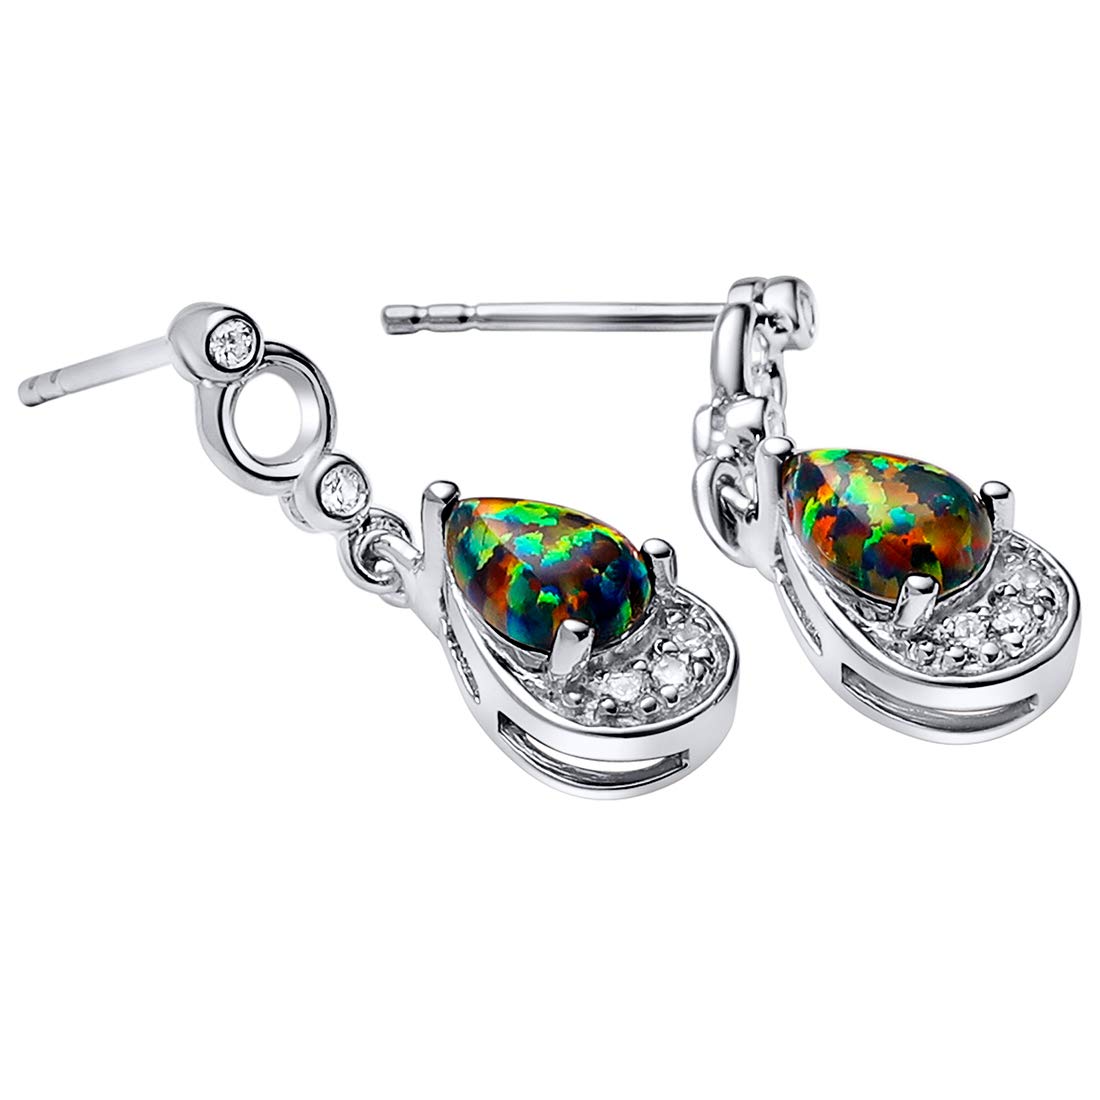 Peora Sterling Silver Created Black Fire Opal Earrings, Hypoallergenic Teardrop Dangle, Pear Shape, 8x5mm, 0.75 Carat total, Friction Backs